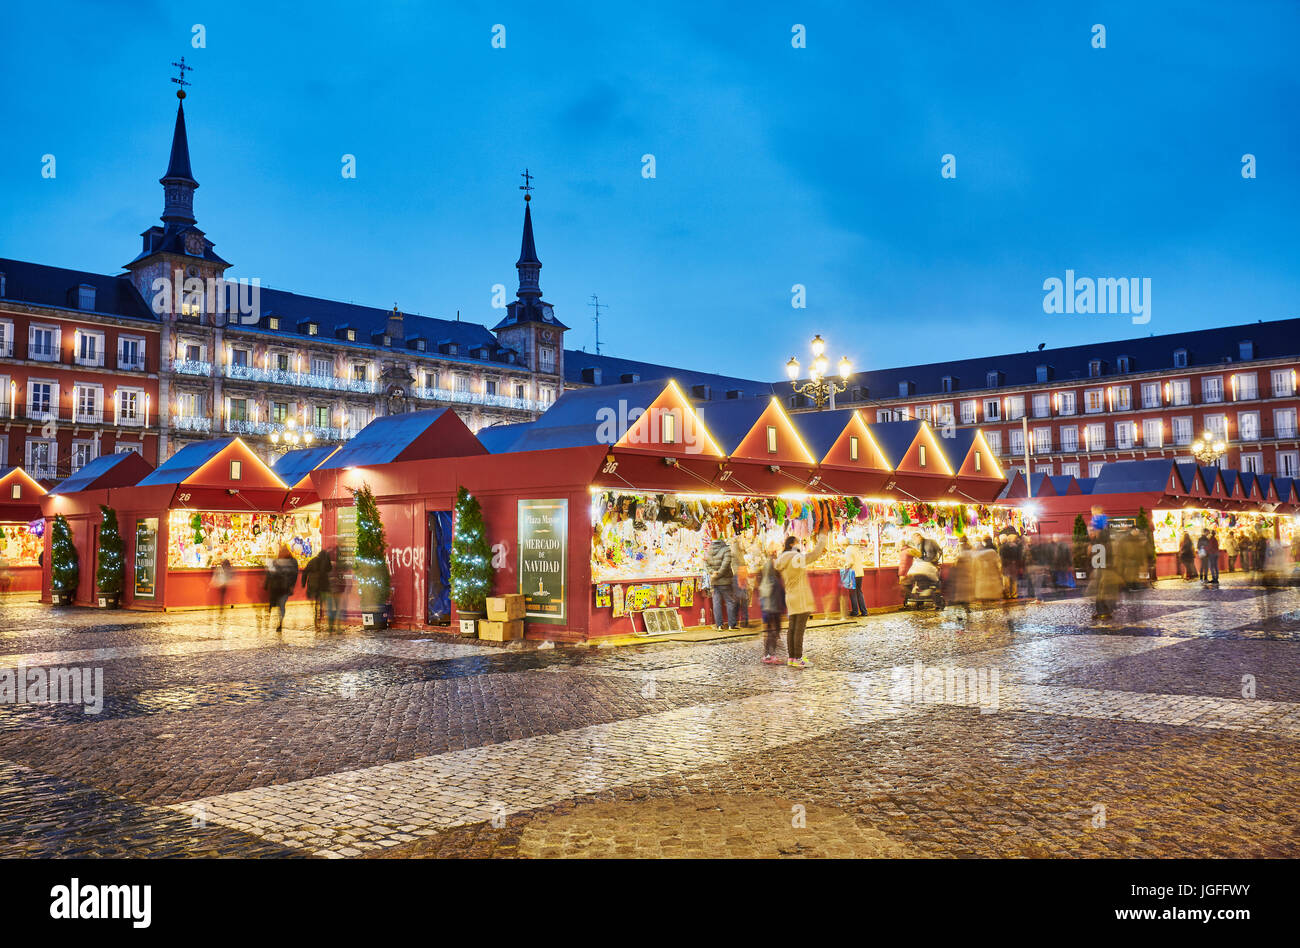 Foto Di Madrid A Natale.Mercatino Di Natale Di Plaza Mayor A Natale Madrid Spagna Foto Stock Alamy